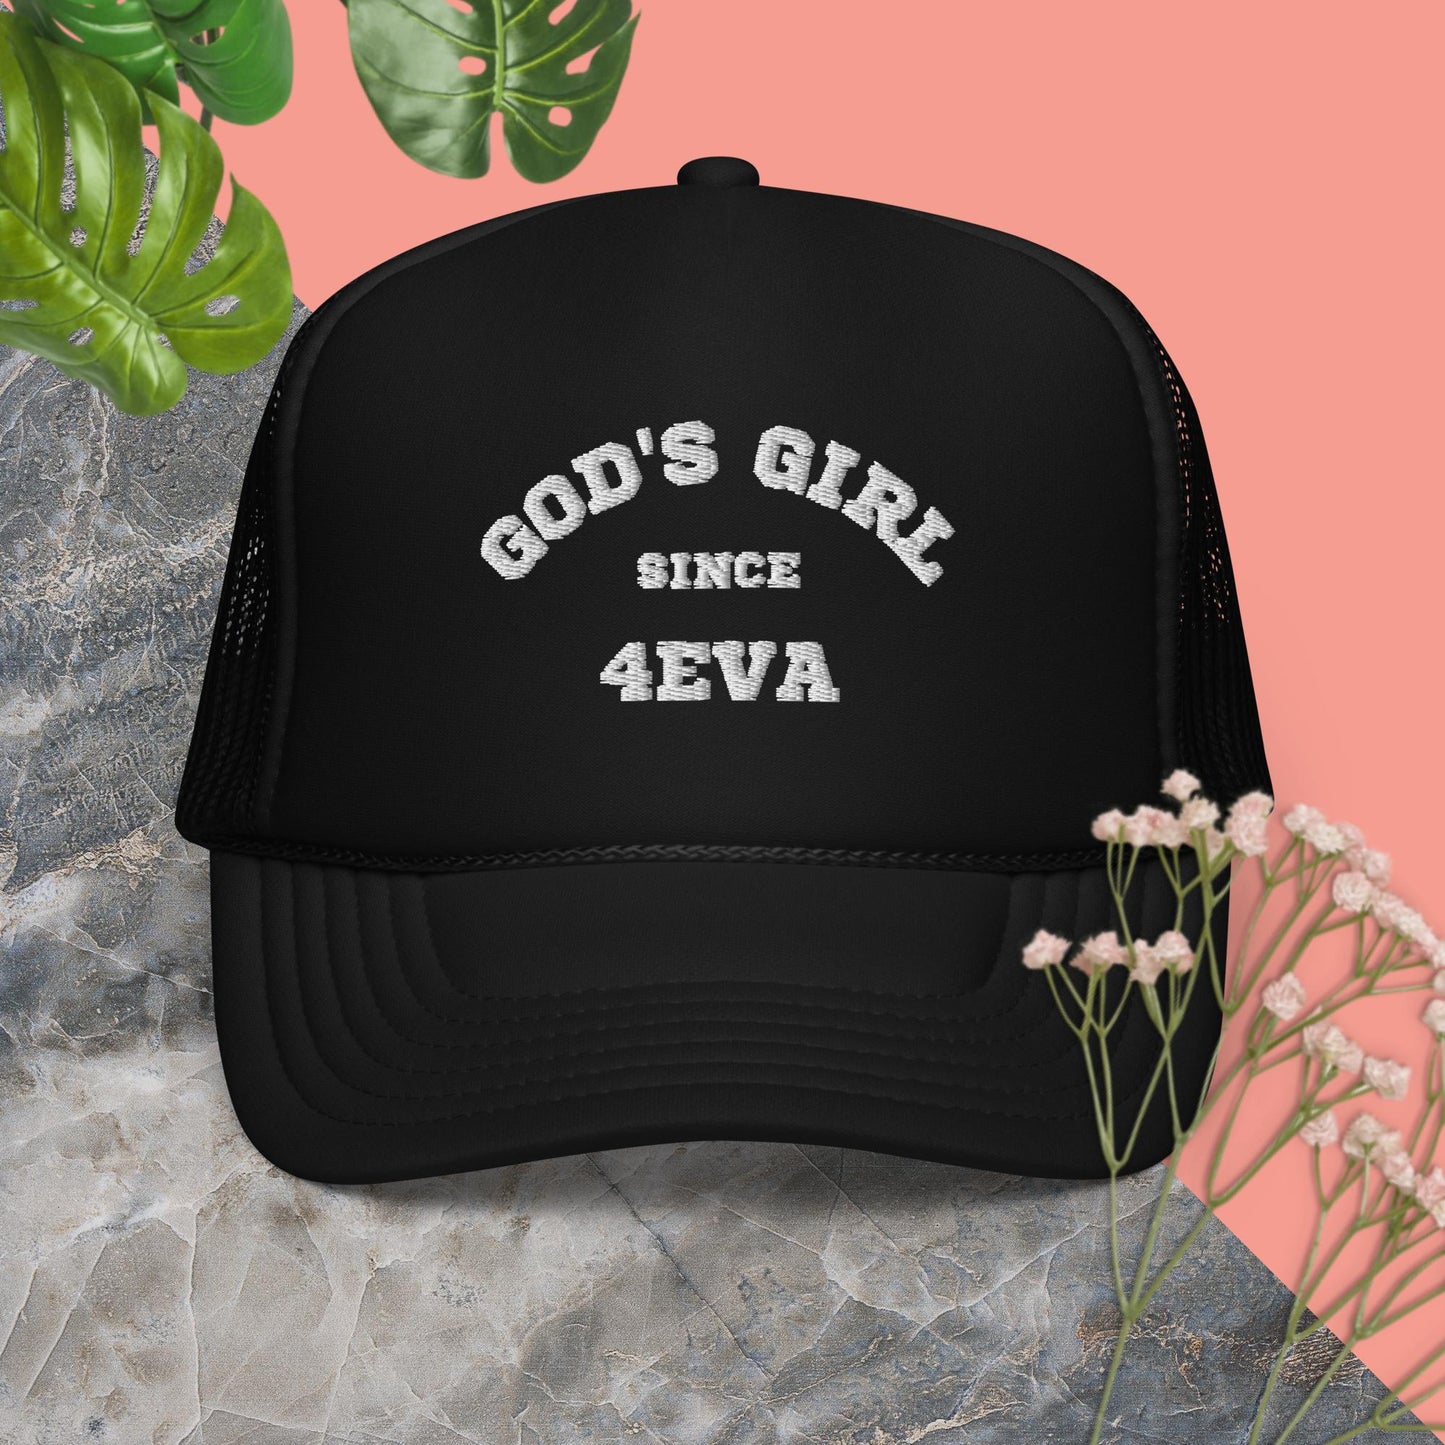 GODS GIRL TRUKER HAT